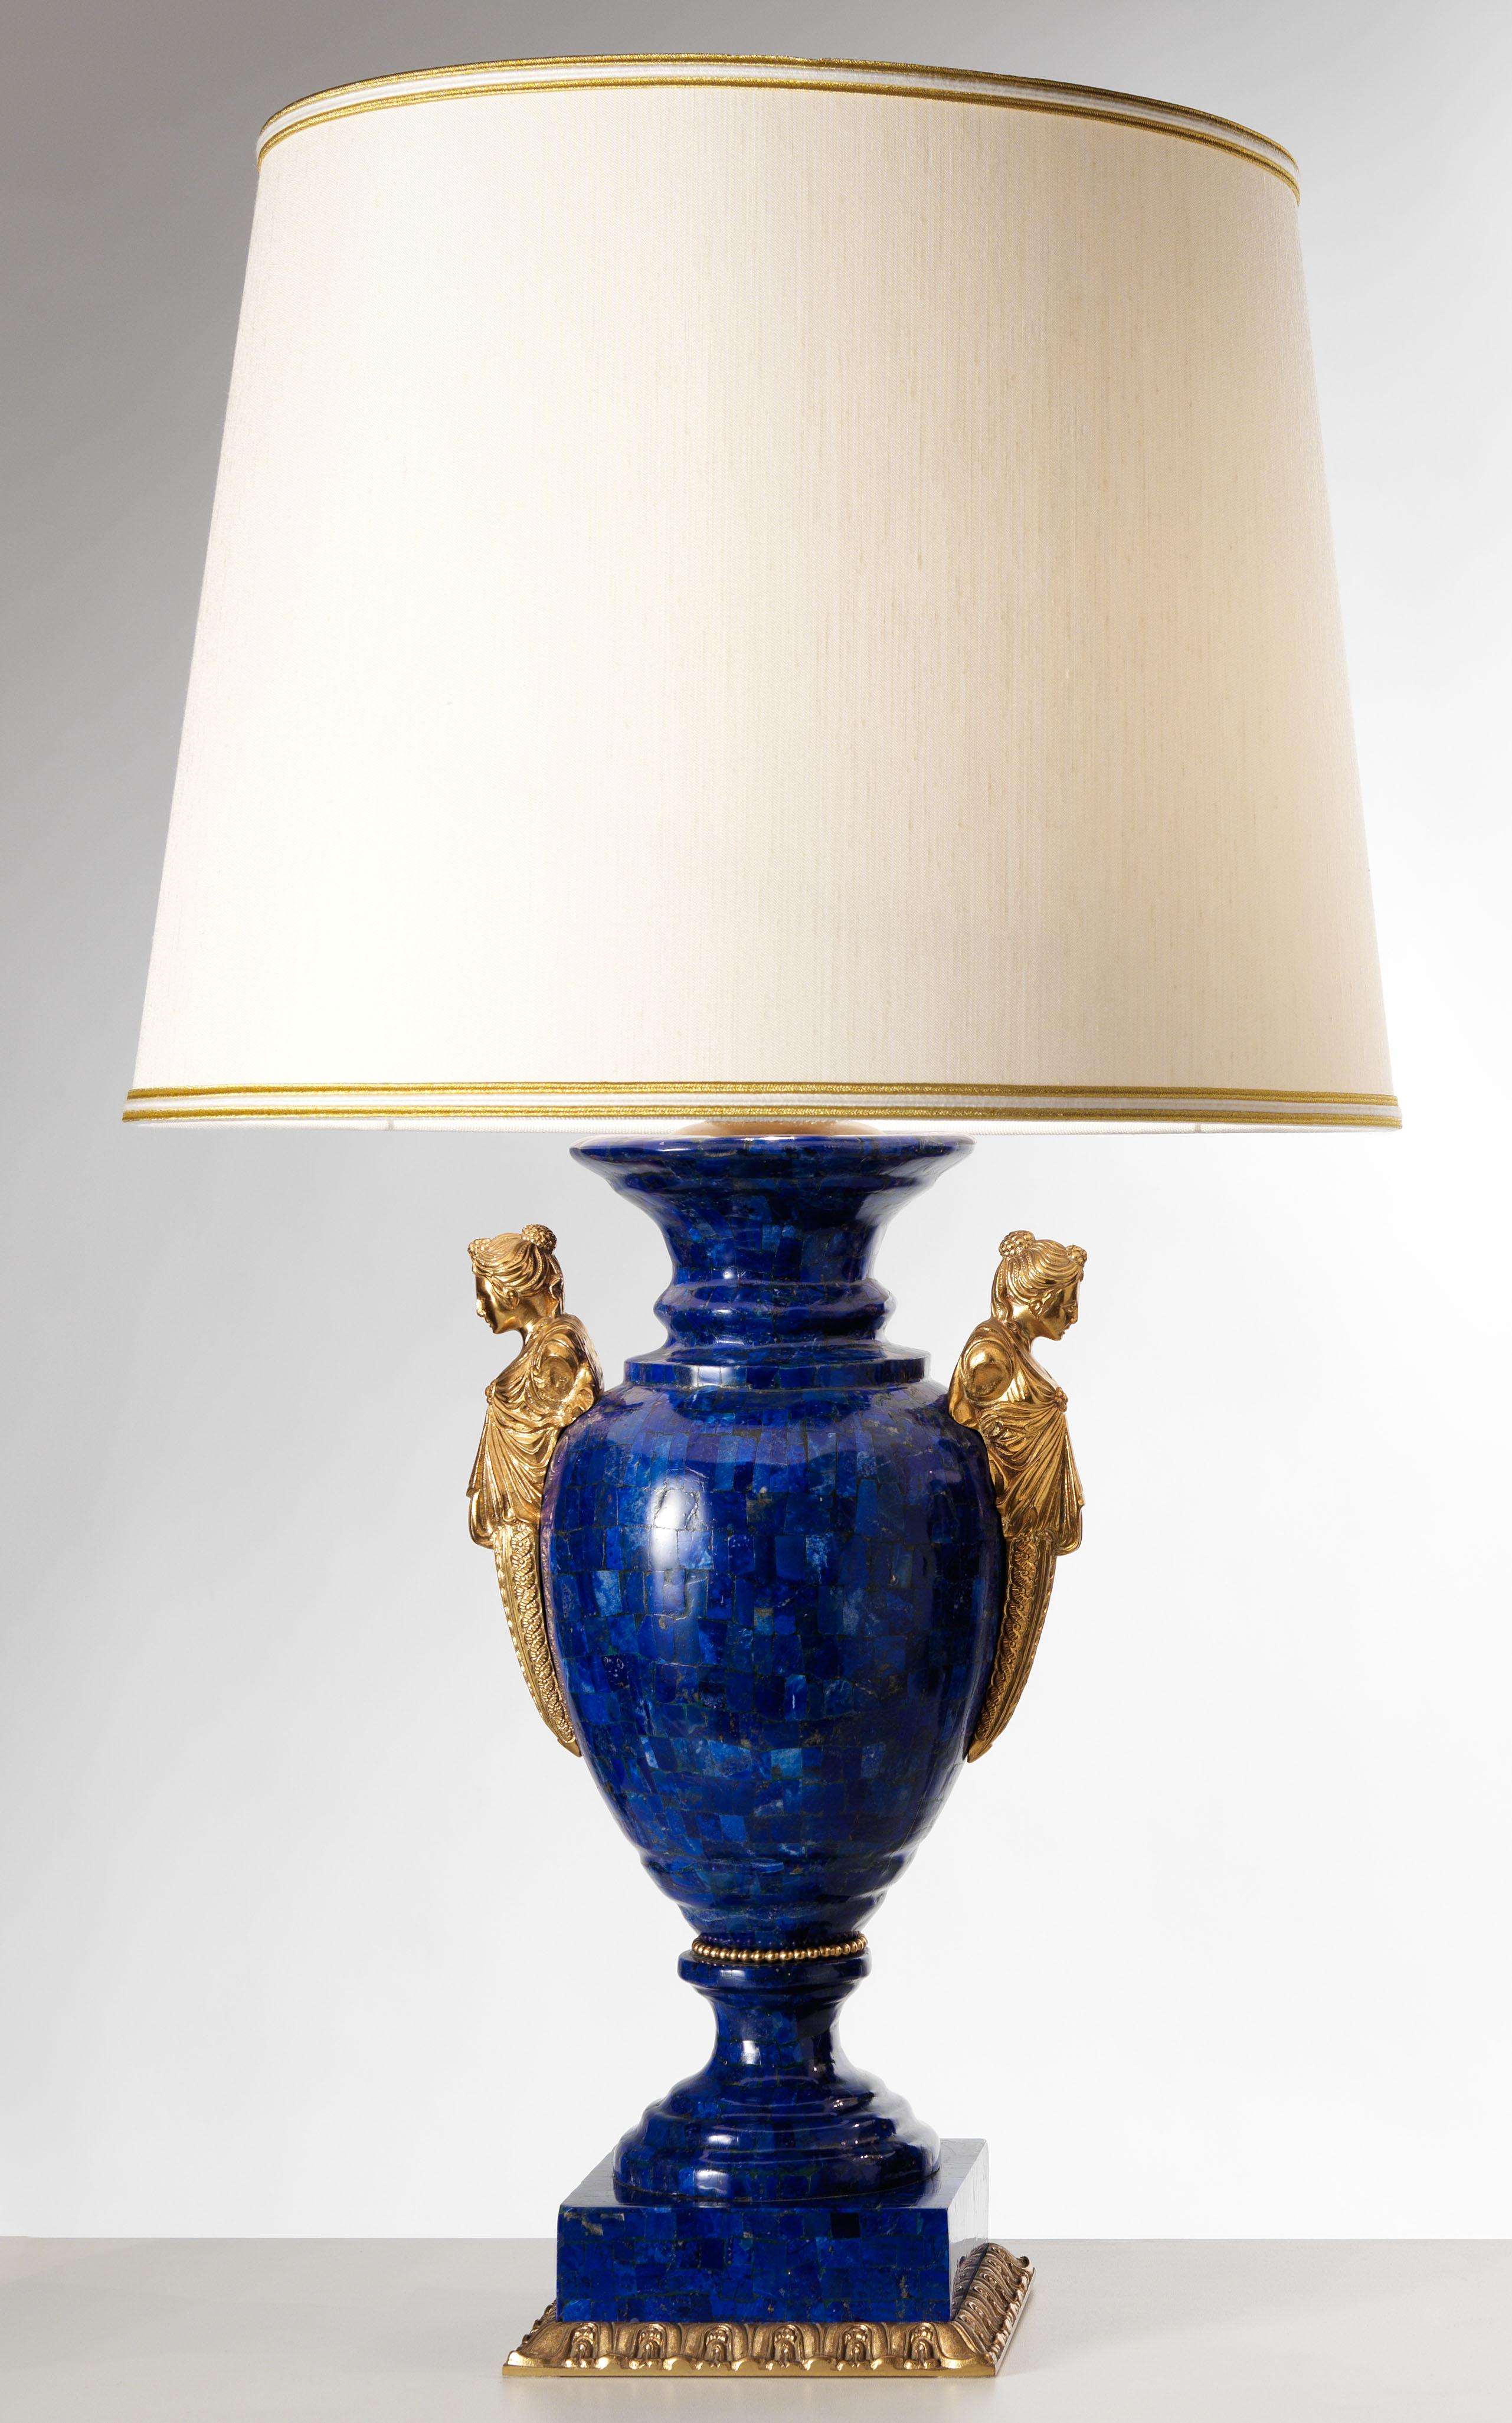 Dieses Set aus Lapislazuli-Lampen und Vasenlampen aus vergoldeter Bronze von Gherardo Degli Albizzi im neoklassischen Stil ist ein außergewöhnliches Stück Luxusdesign. Die eiförmigen Vasen haben einen bauchigen Körper, der rundum mit Lapislazuli